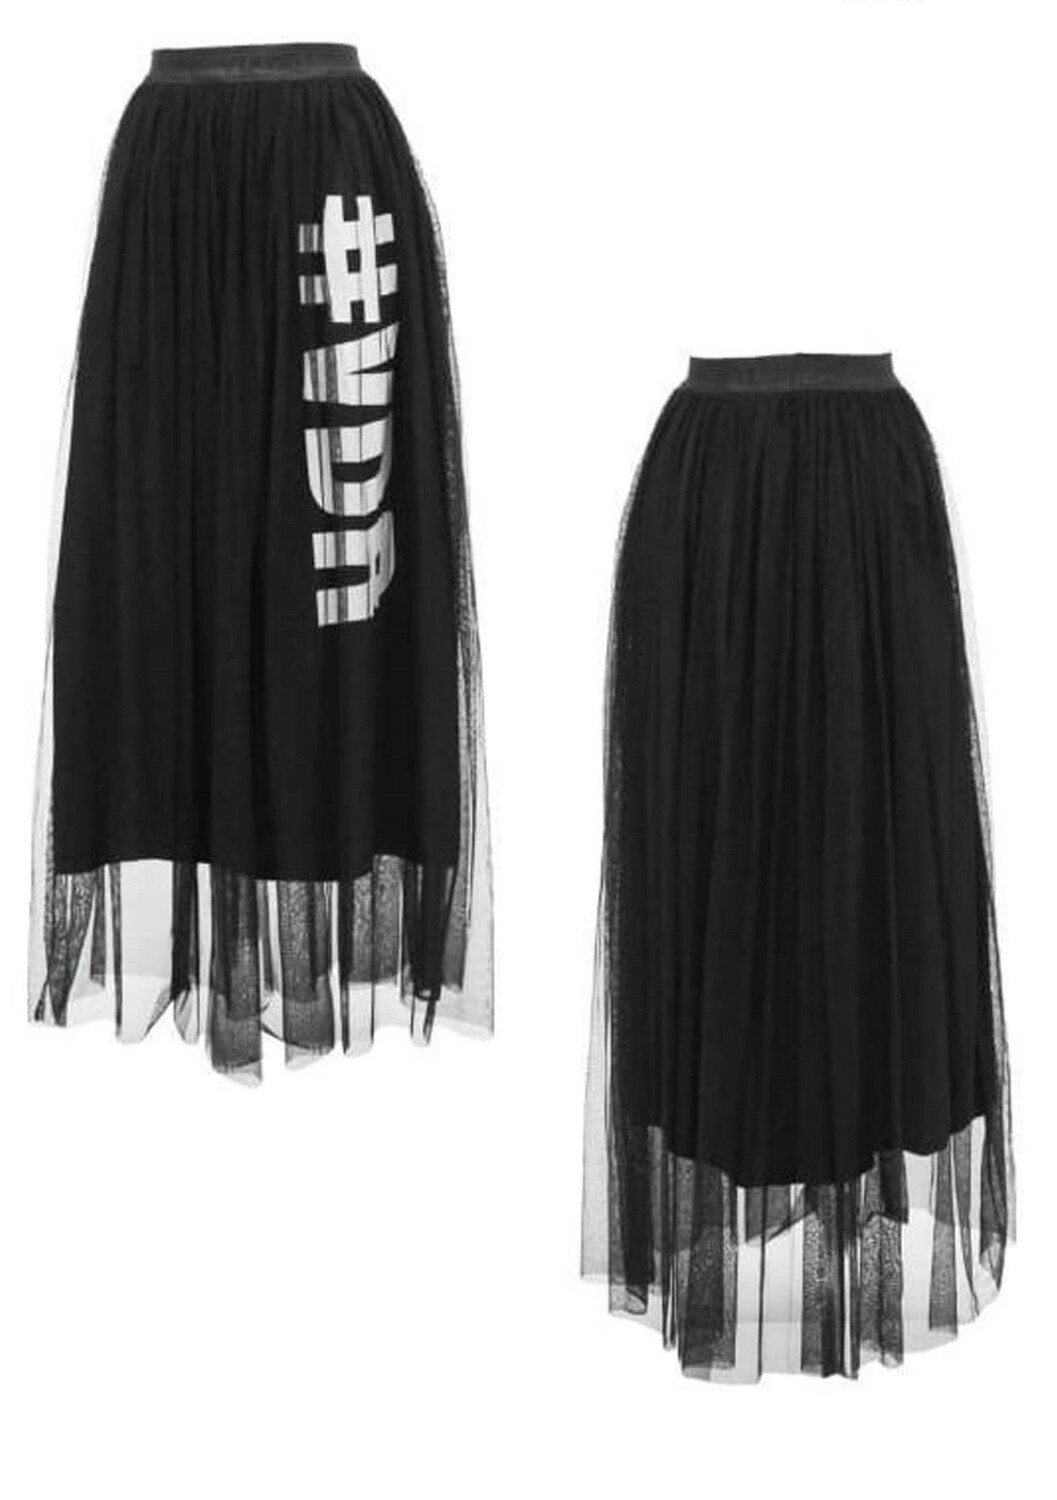 Printed skirt.